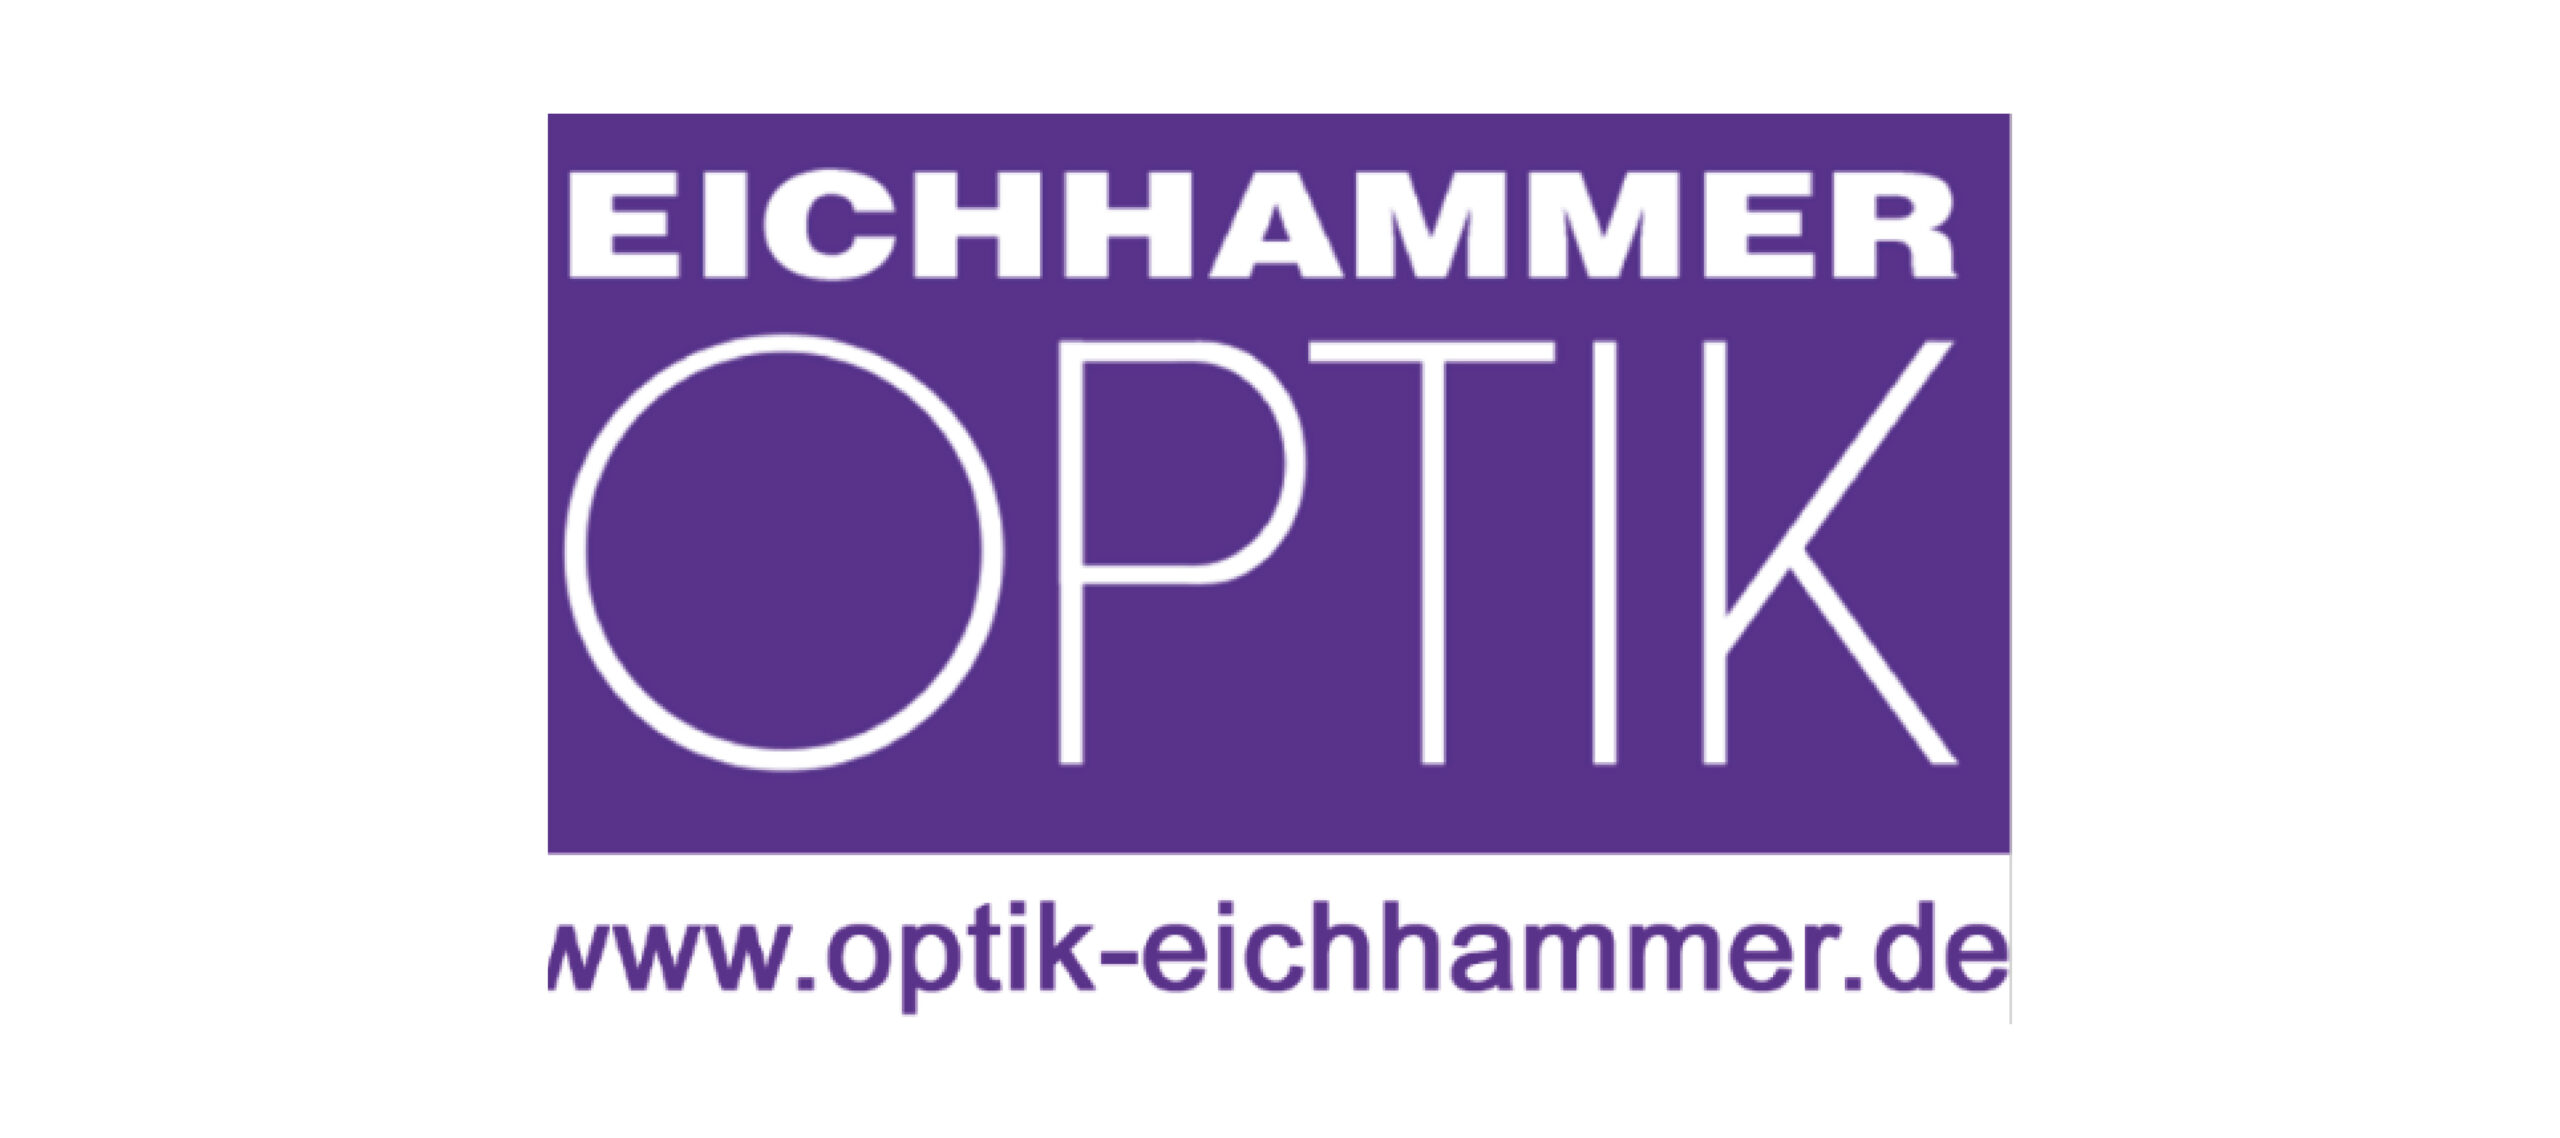 Eichhammer-Optik